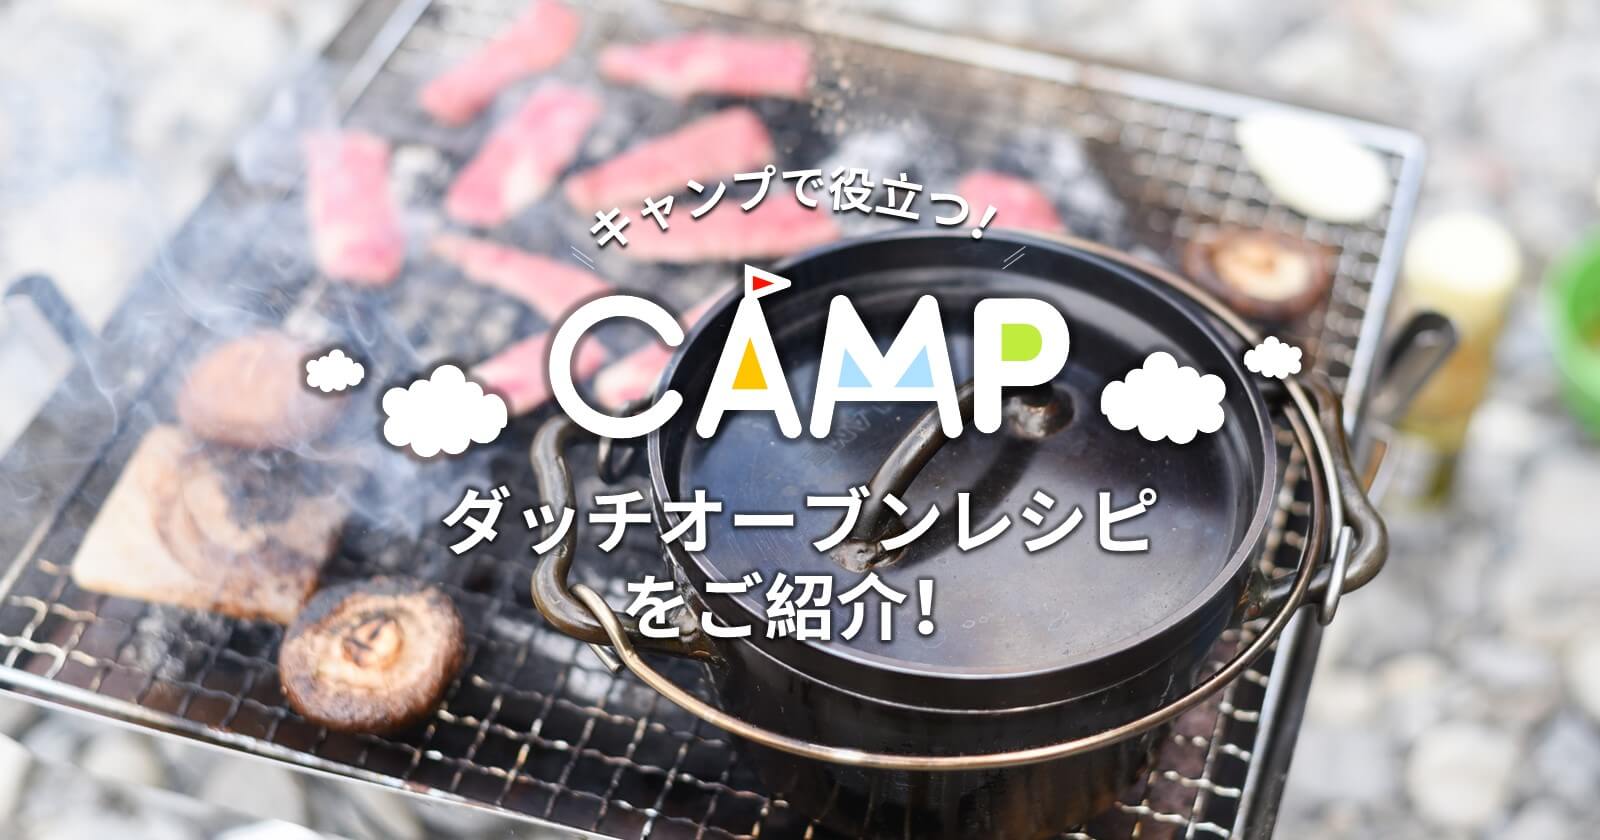 キャンプで役立つ おすすめのダッチオーブンレシピをご紹介 キャンプ アウトドアのtakibi タキビ Part 3